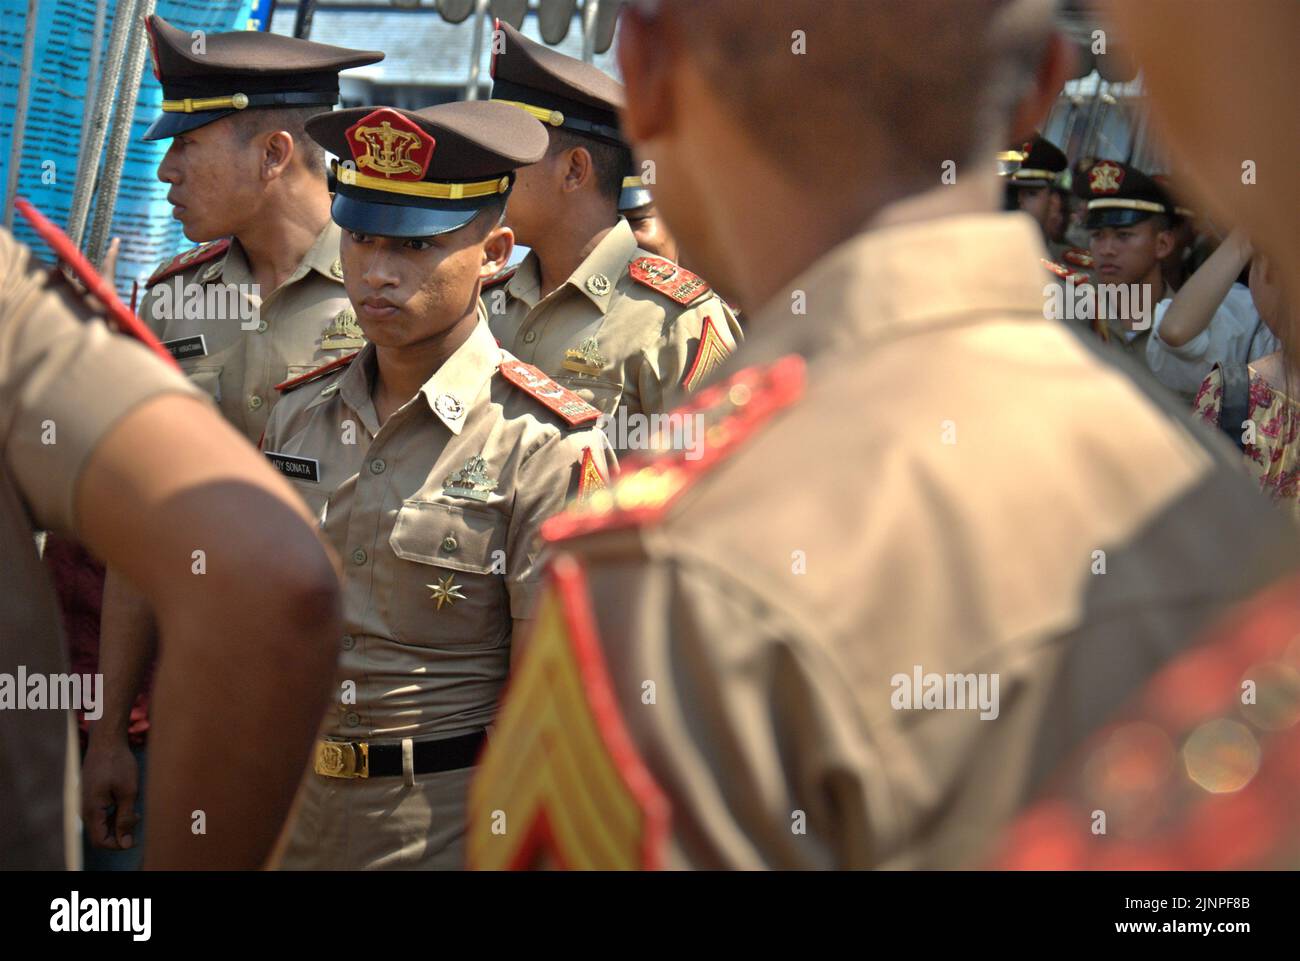 Les cadets de la marine indonésienne sont photographiés sur le KRI Dewaruci (Dewa Ruci), un grand navire indonésien, alors que la goélette de type barquentine est ouverte aux visiteurs du port de Kolinlamil (port de la marine) à Tanjung Priok, dans le nord de Jakarta, en Indonésie. Banque D'Images